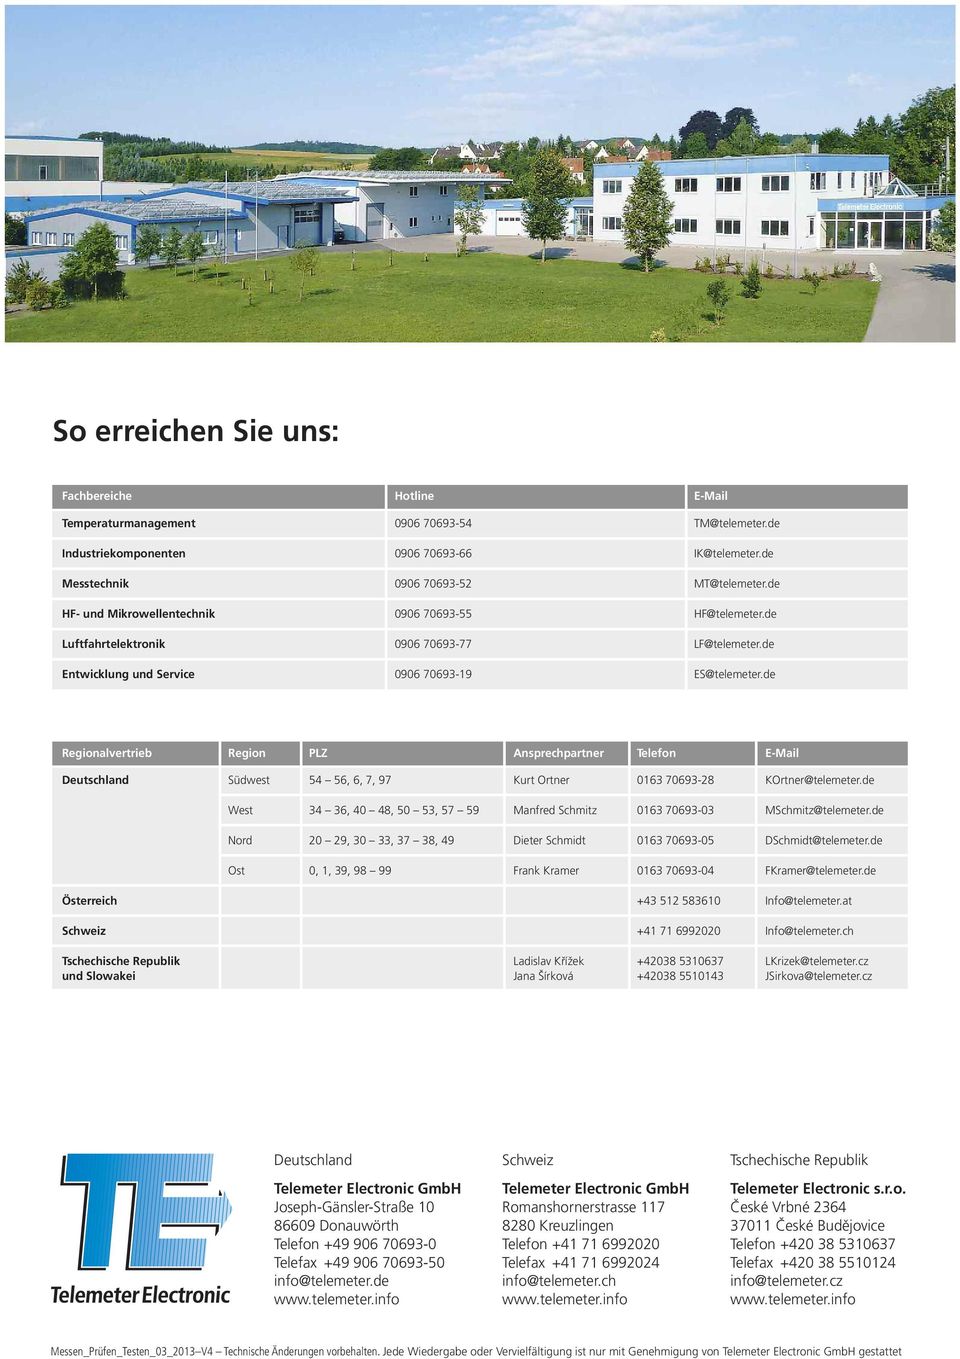 de Regionalvertrieb Region PLZ Ansprechpartner Telefon E-Mail Deutschland Südwest 54 56, 6, 7, 97 Kurt Ortner 0163 70693-28 KOrtner@telemeter.